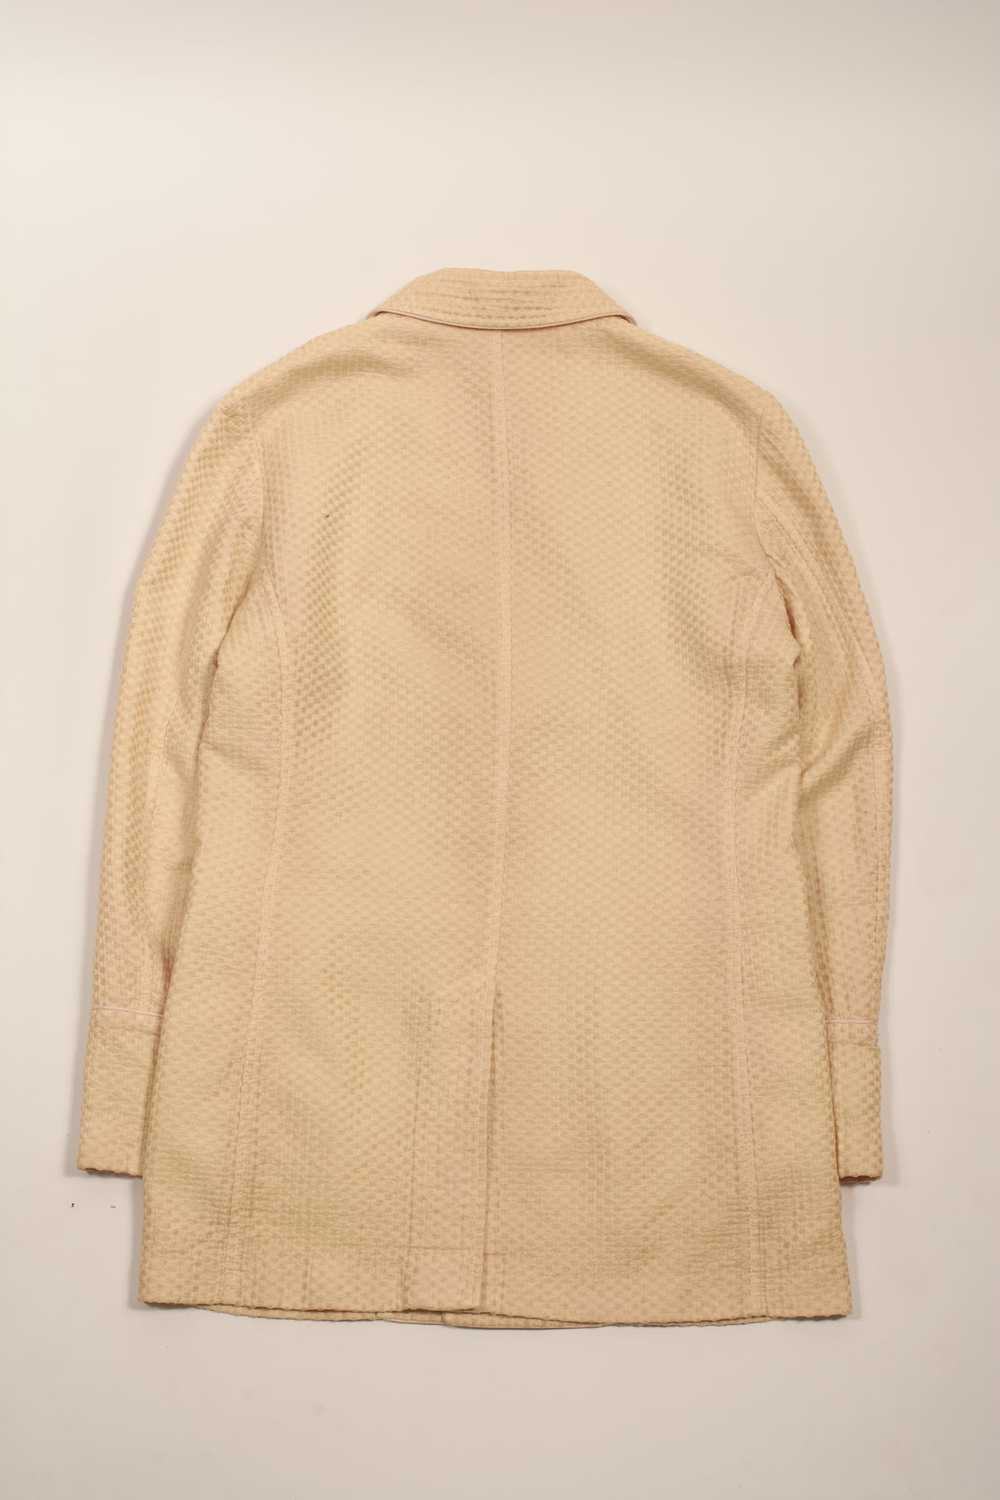 Kiminori Morishita Textured Linen Jacket - image 2